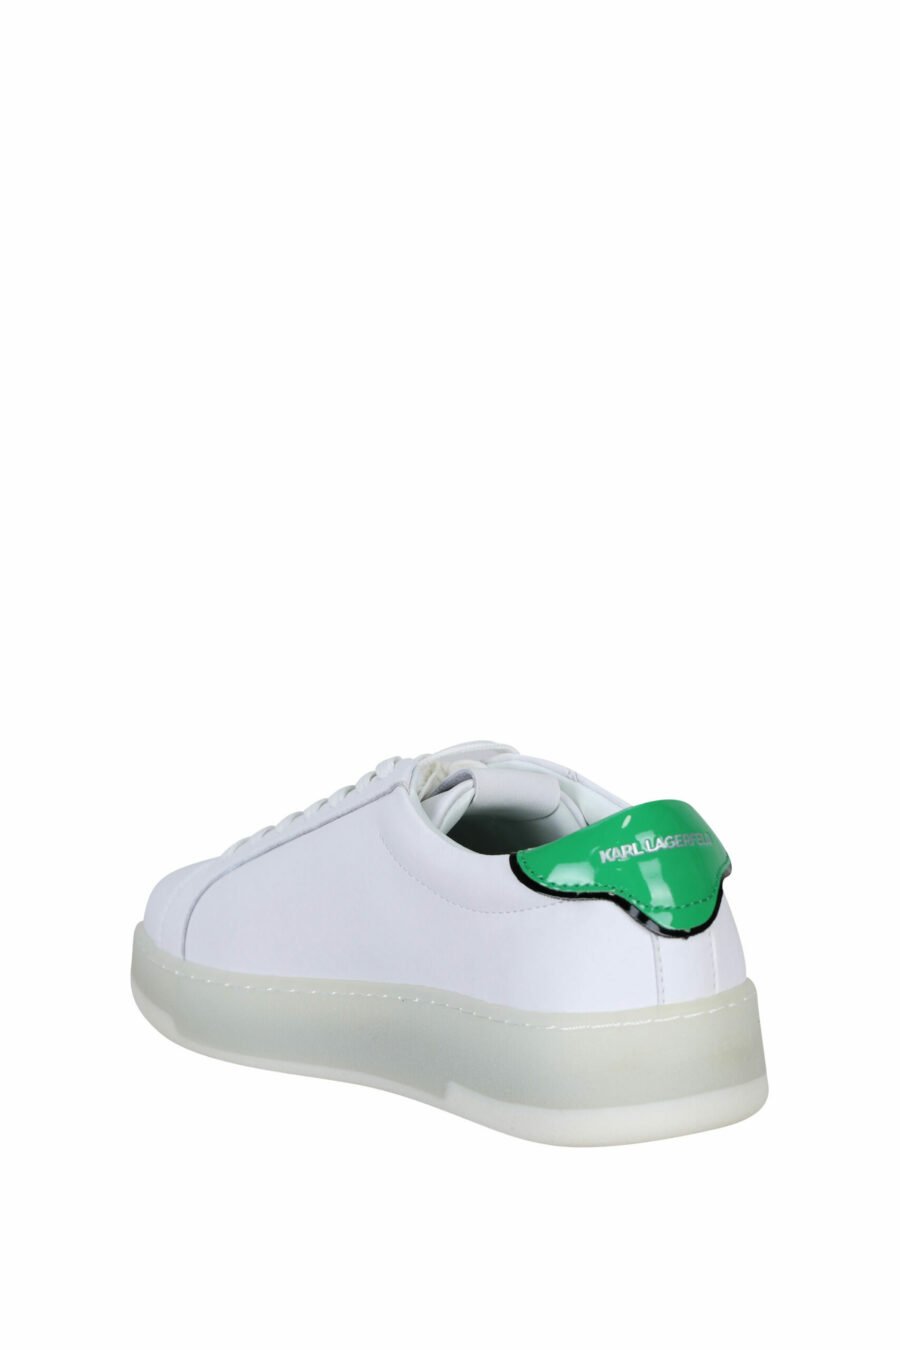 Baskets blanches avec détails verts et logo "st rue guillaume" - 5059529291289 3 scaled